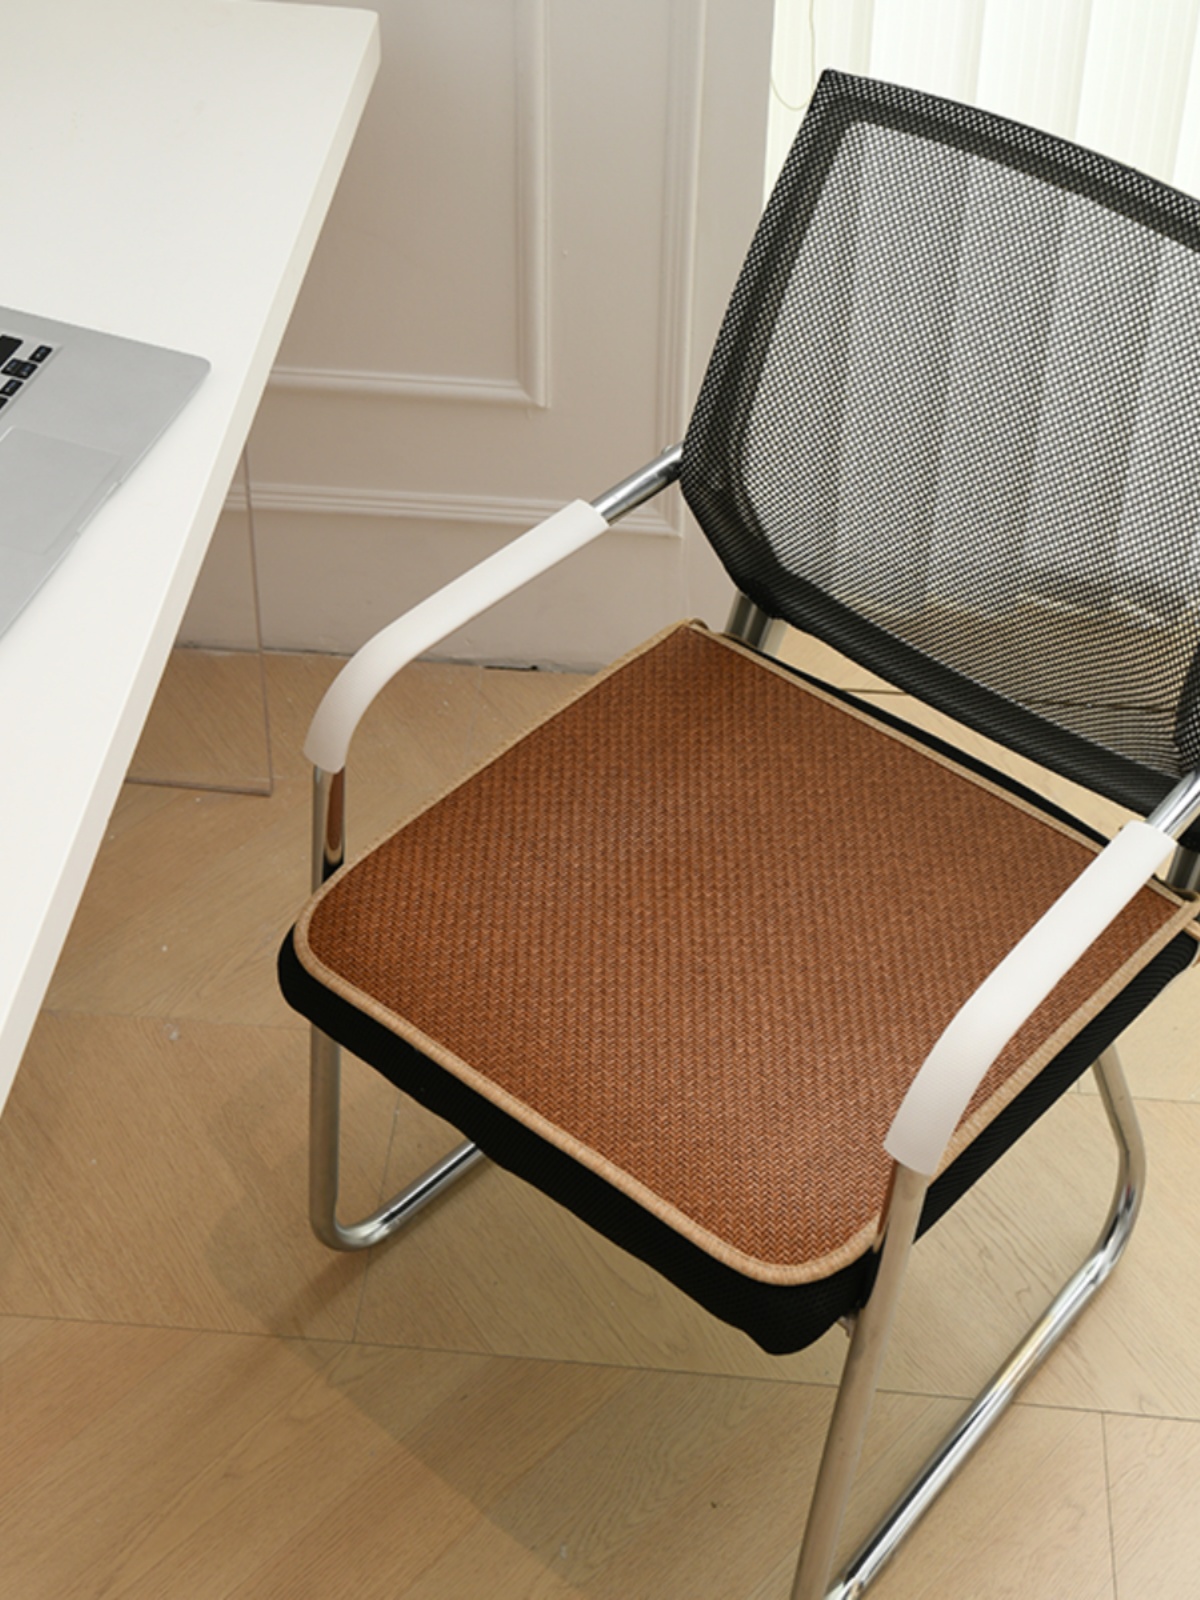 學生四季藤椅坐墊 涼蓆辦公室簡約現代風格 格子 45x45cm